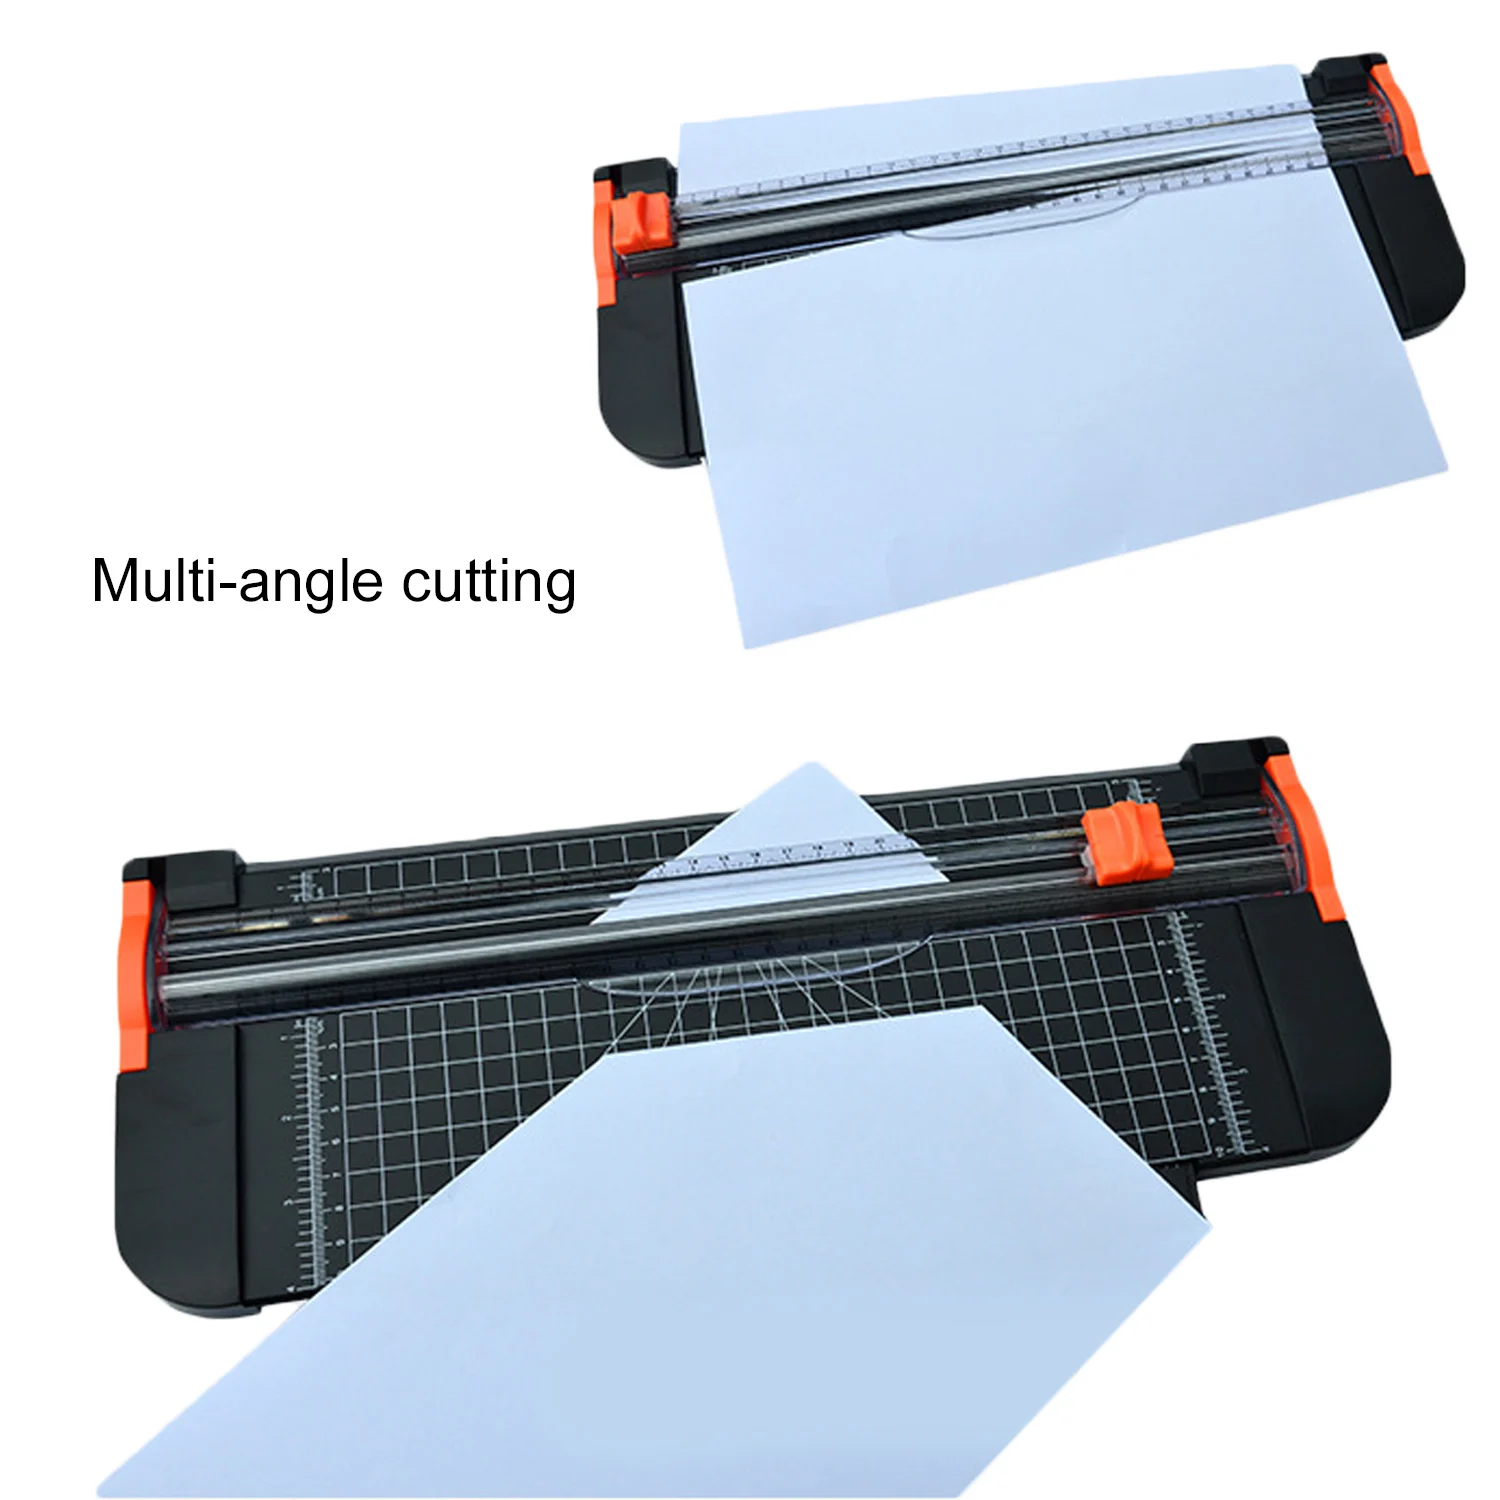 A4 Бумага Триммер гильотина для резки бумаги с защитой безопасности гильотина боковая линейка для стандартной резки бумаги этикетки с фото